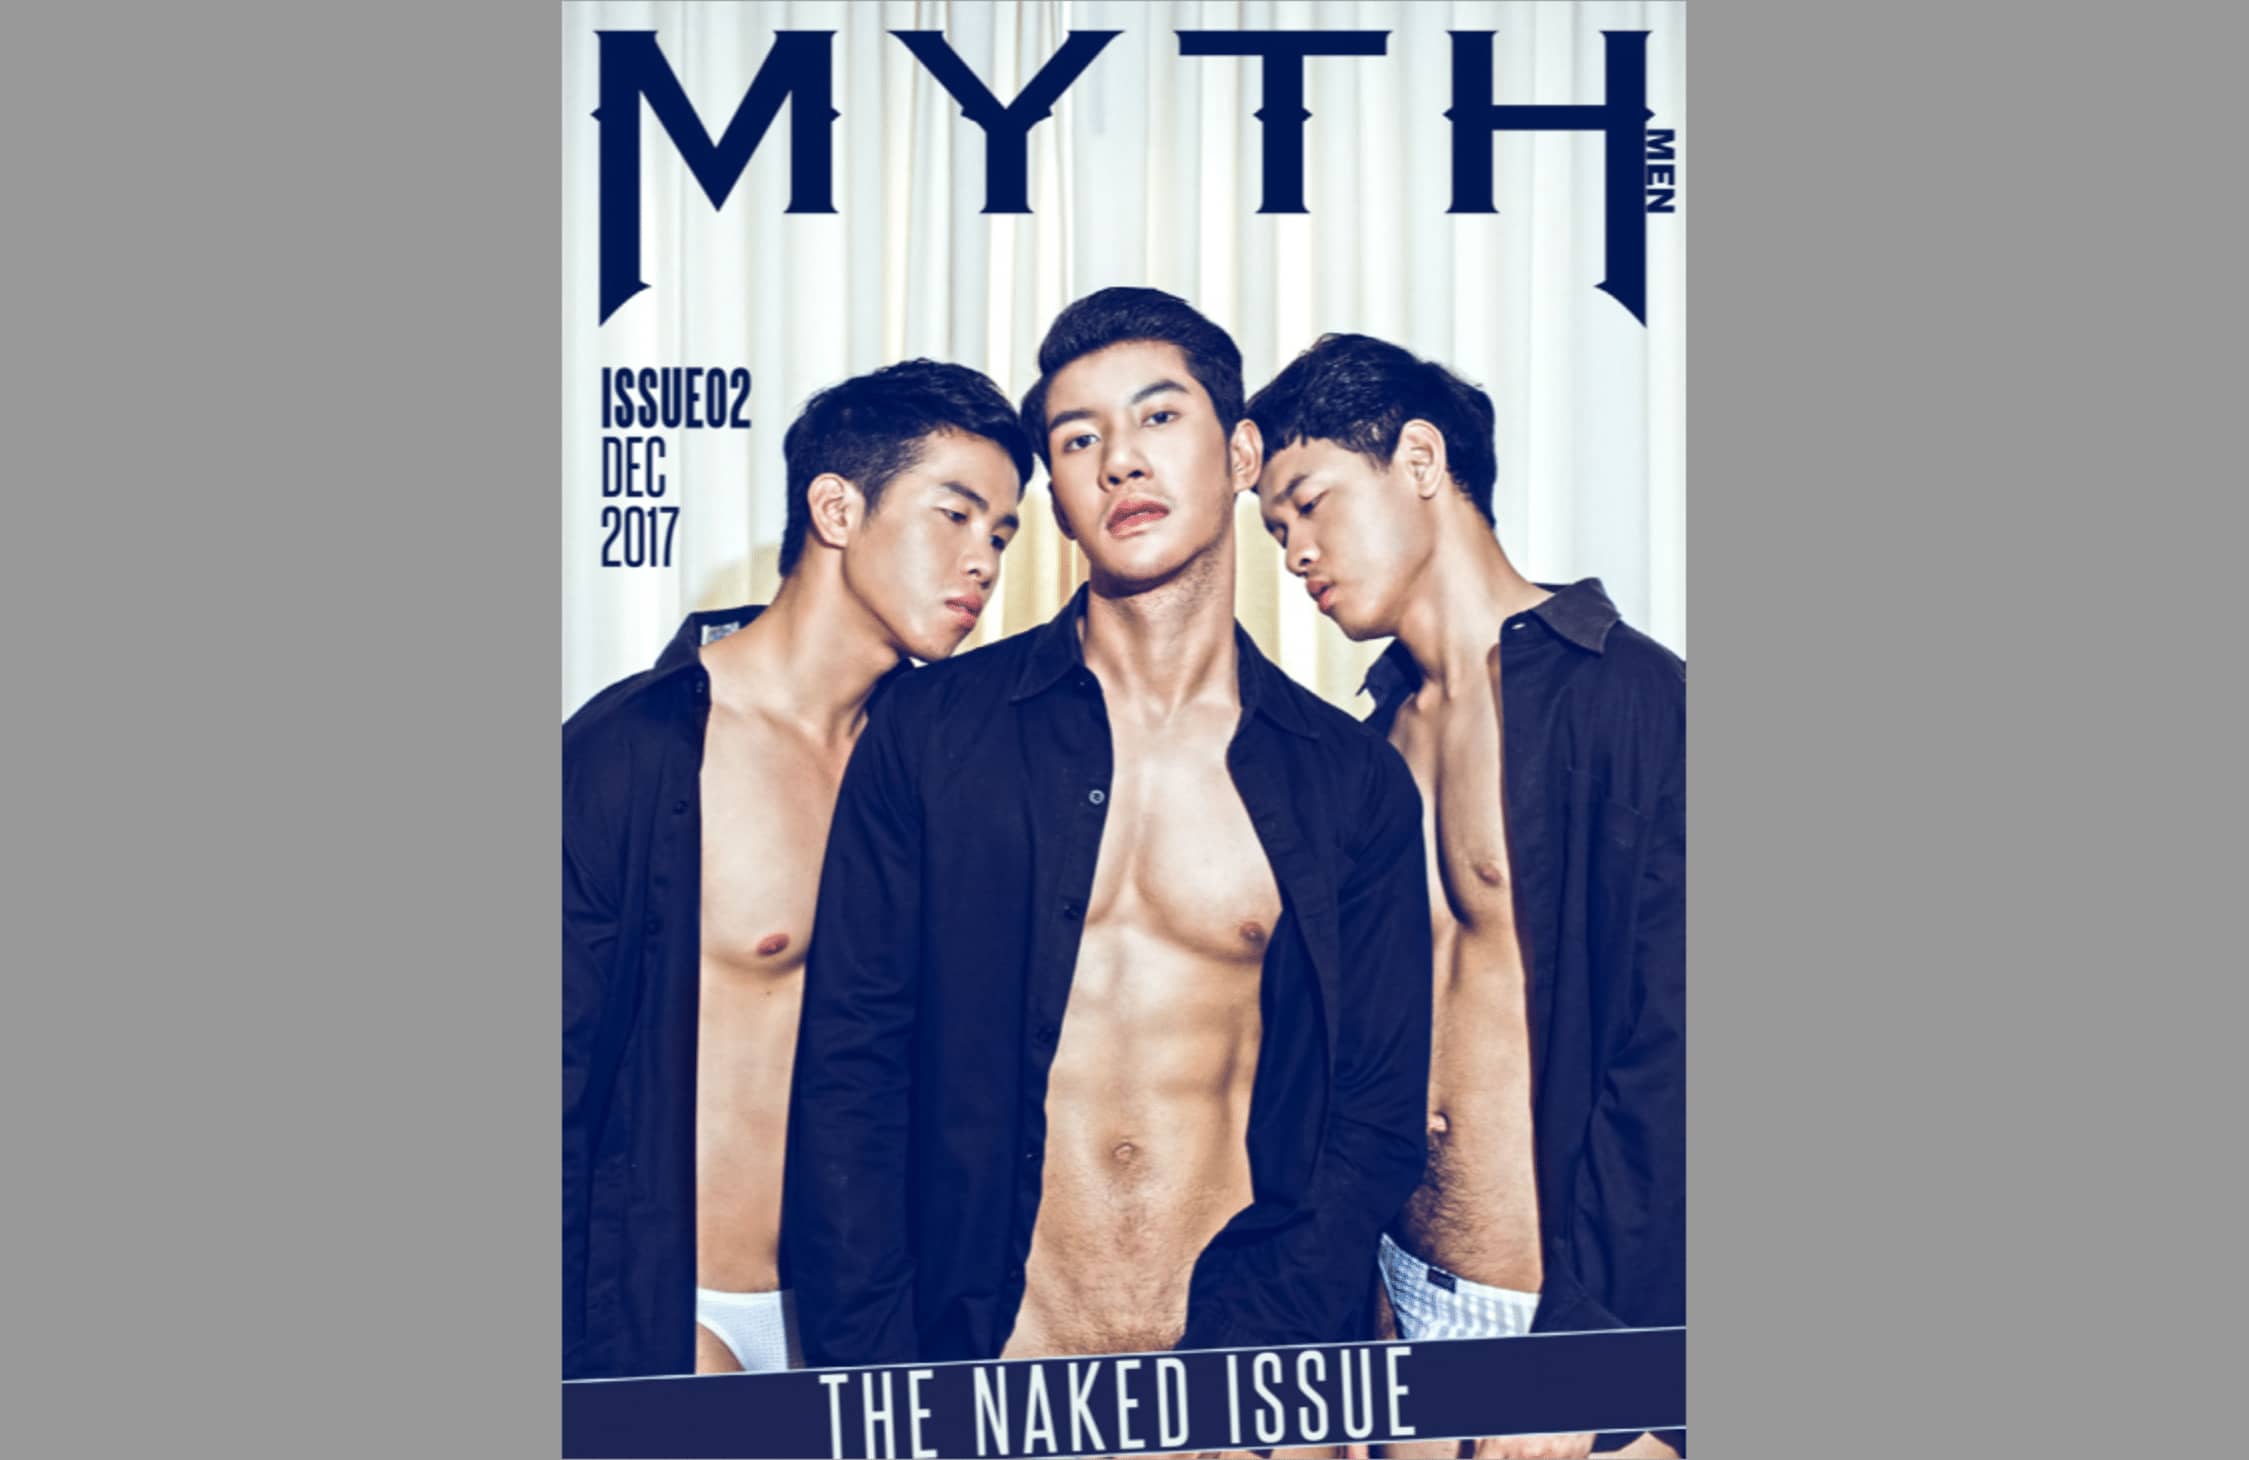 MYTH MEN NO.02 MEN'S JOURNEY ‖ 18+【PHOTO】